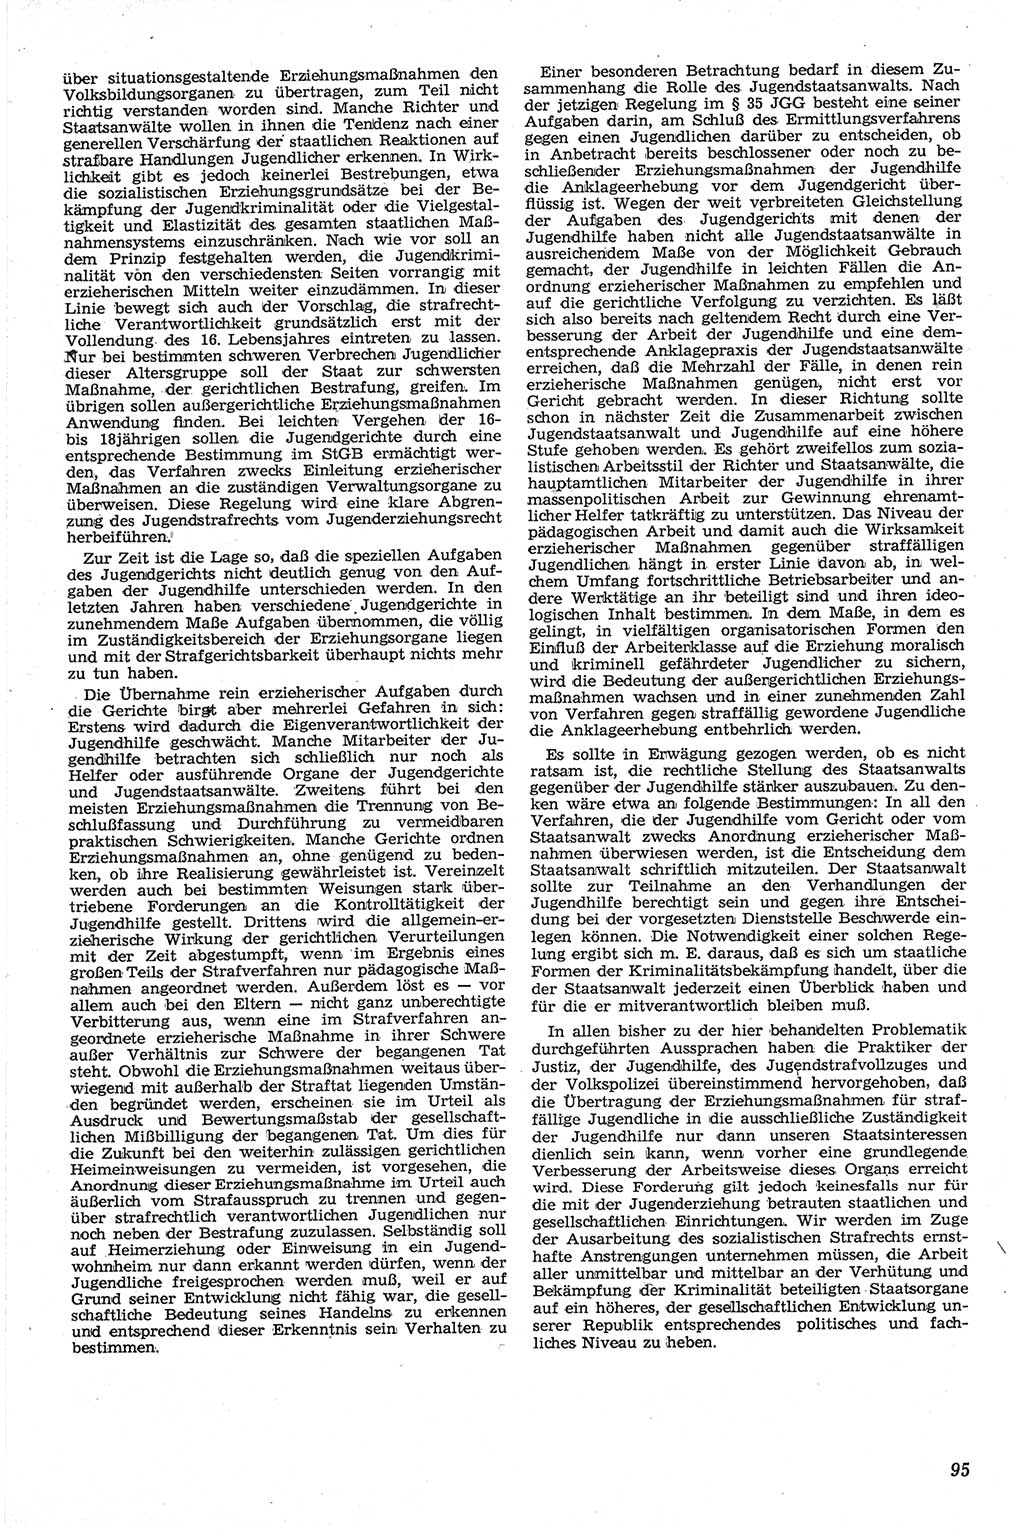 Neue Justiz (NJ), Zeitschrift für Recht und Rechtswissenschaft [Deutsche Demokratische Republik (DDR)], 13. Jahrgang 1959, Seite 95 (NJ DDR 1959, S. 95)